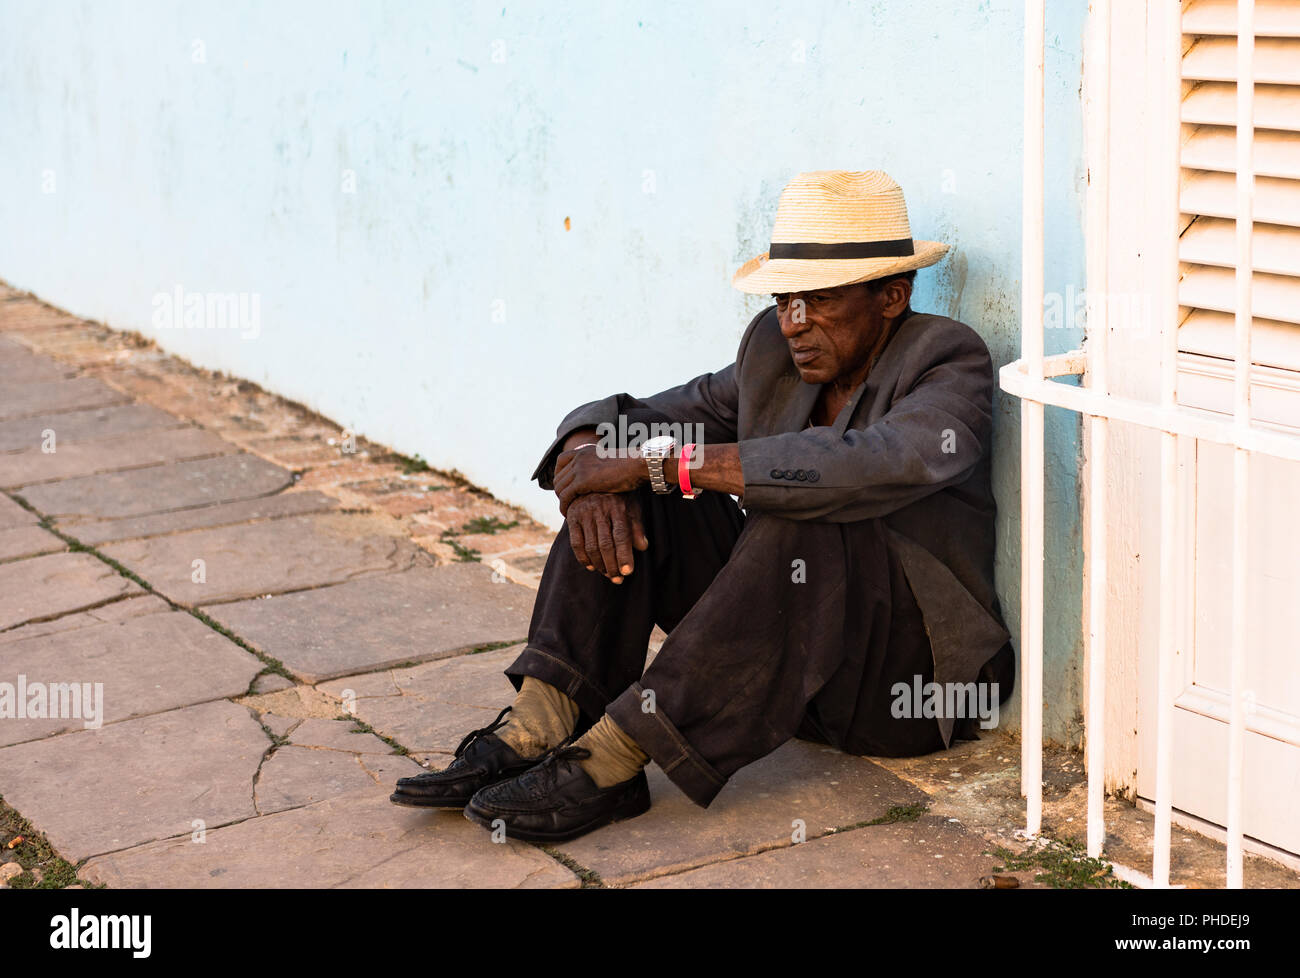 Trinidad / Cuba - Marzo 15, 2016: indigenti uomo cubano, indossando la paglia fedora e ben indossato tuta, siede sulla terra contro la parete blu in plaza square. Foto Stock